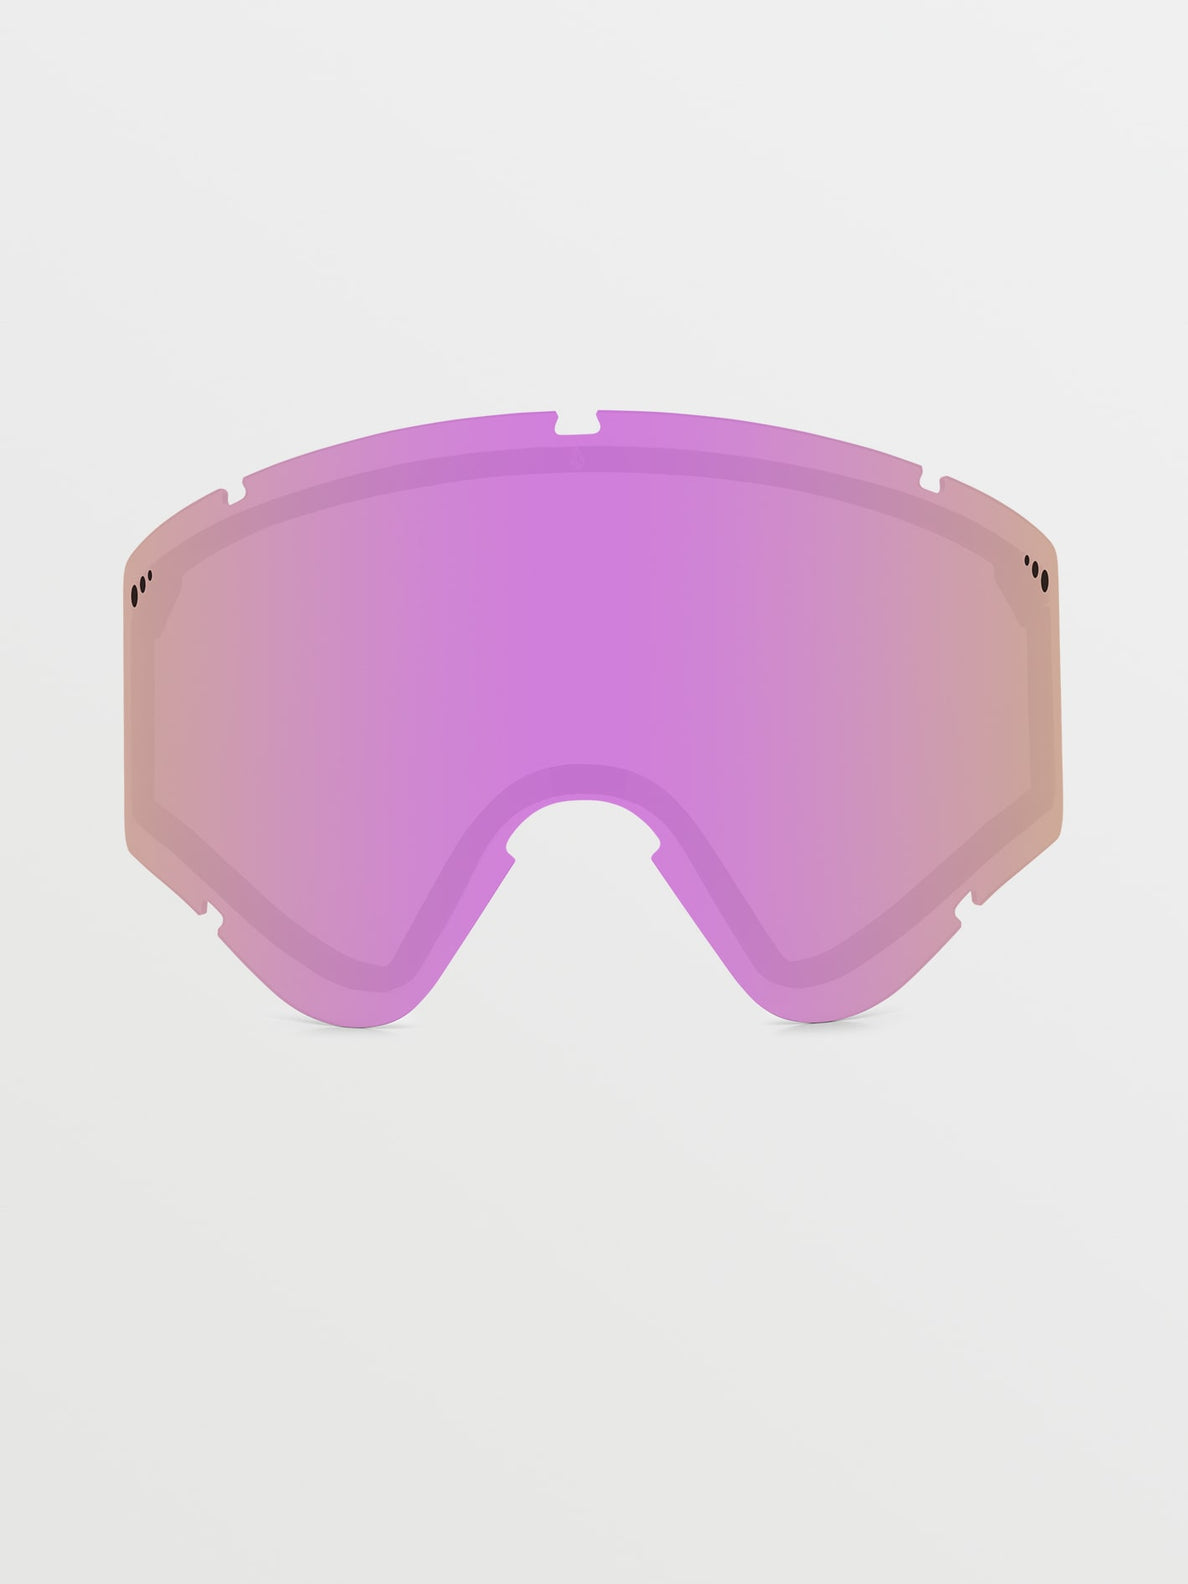 Yae Lens - Pink Chrome